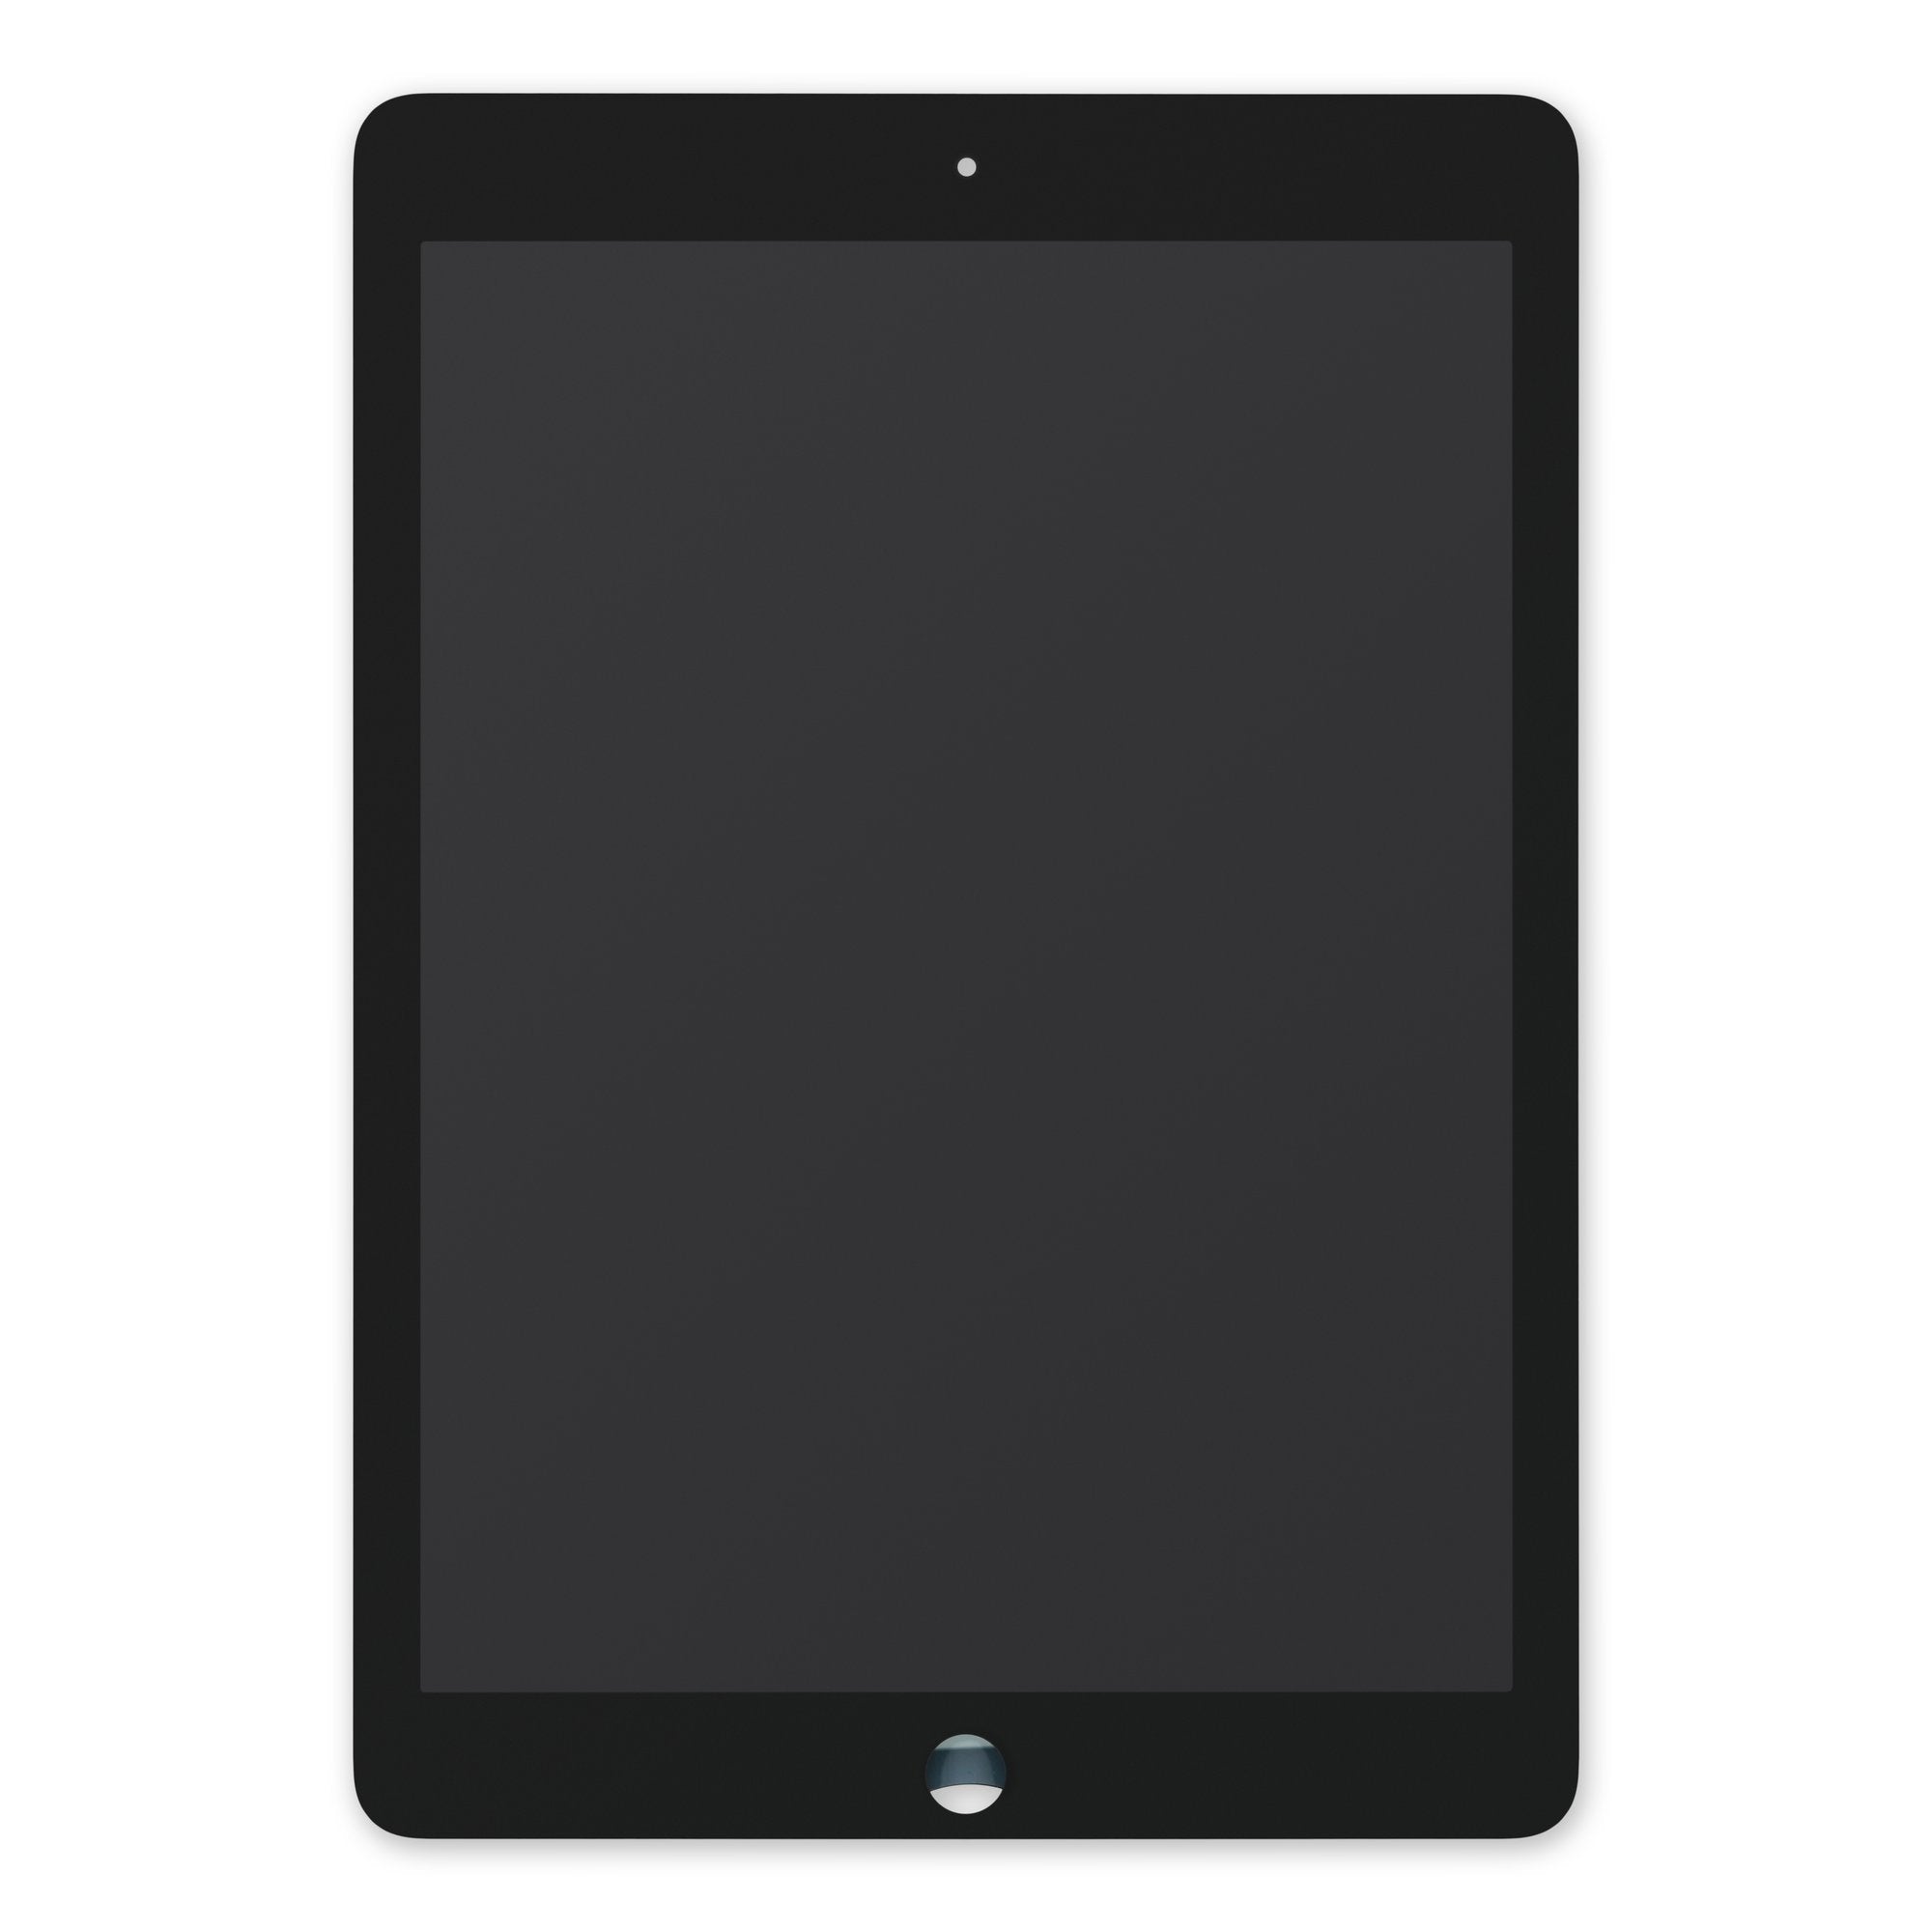 ecran LCD de remplacement pour iPad Air 2 Blanc (A1566, A1567) acheter